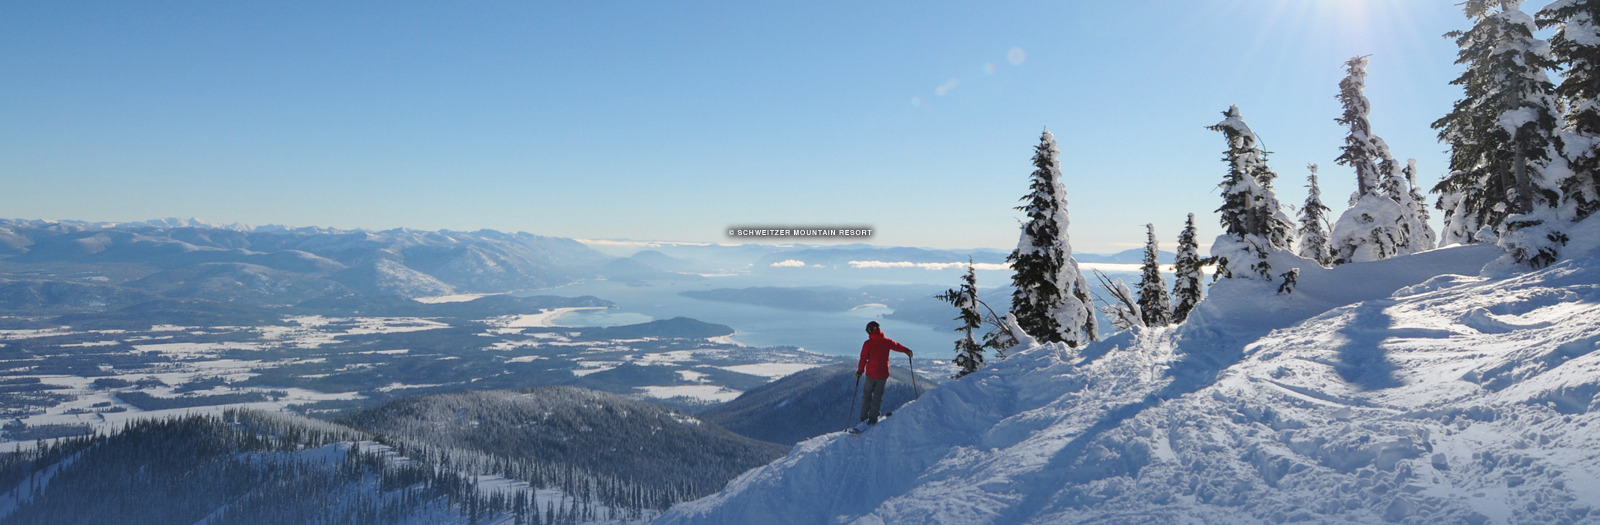 schweitzer mountain resort beginner skiing